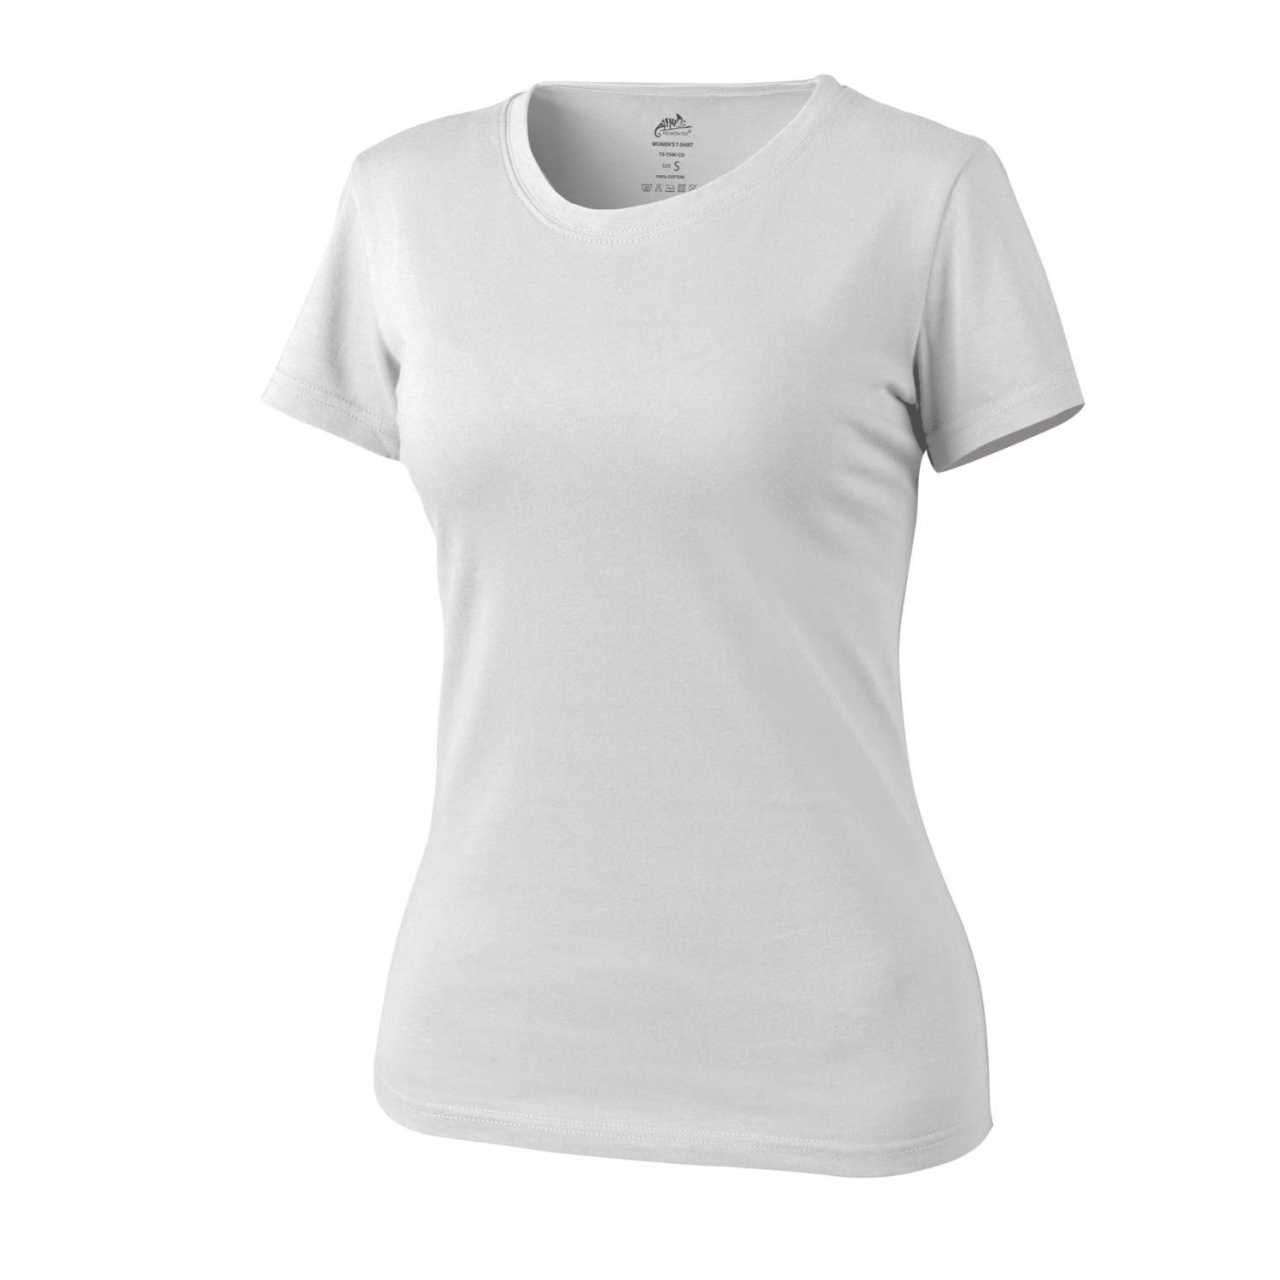 Tričko dámské Helikon Womens Shirt - bílé, S